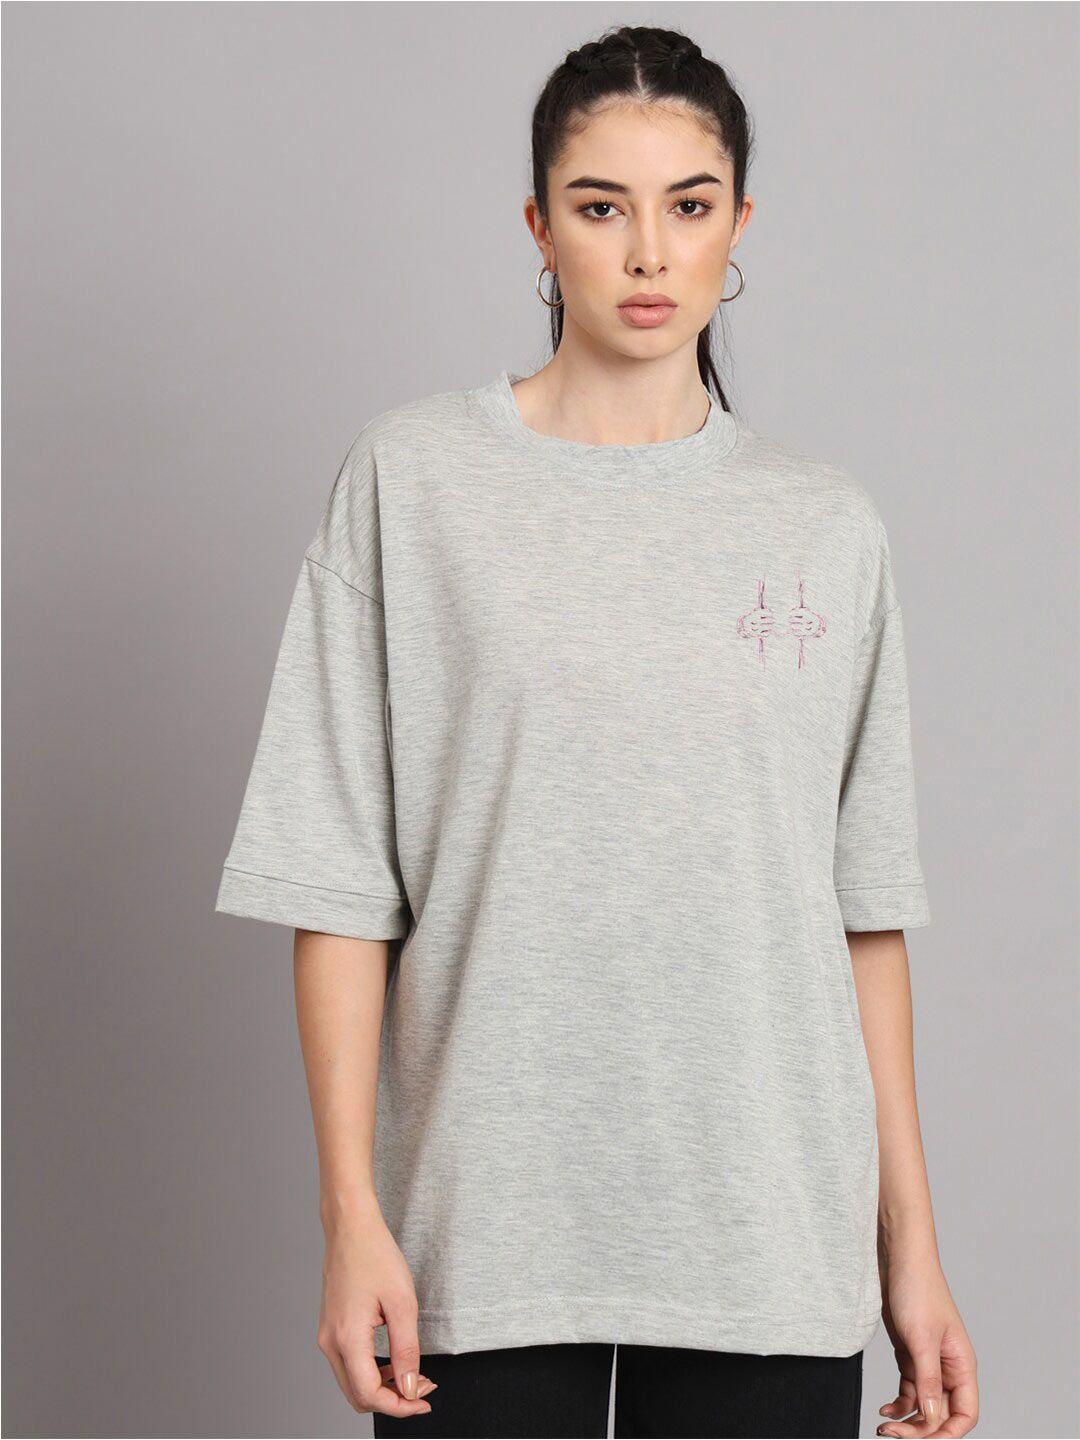 imsa moda women grey typography printed raw edge t-shirt